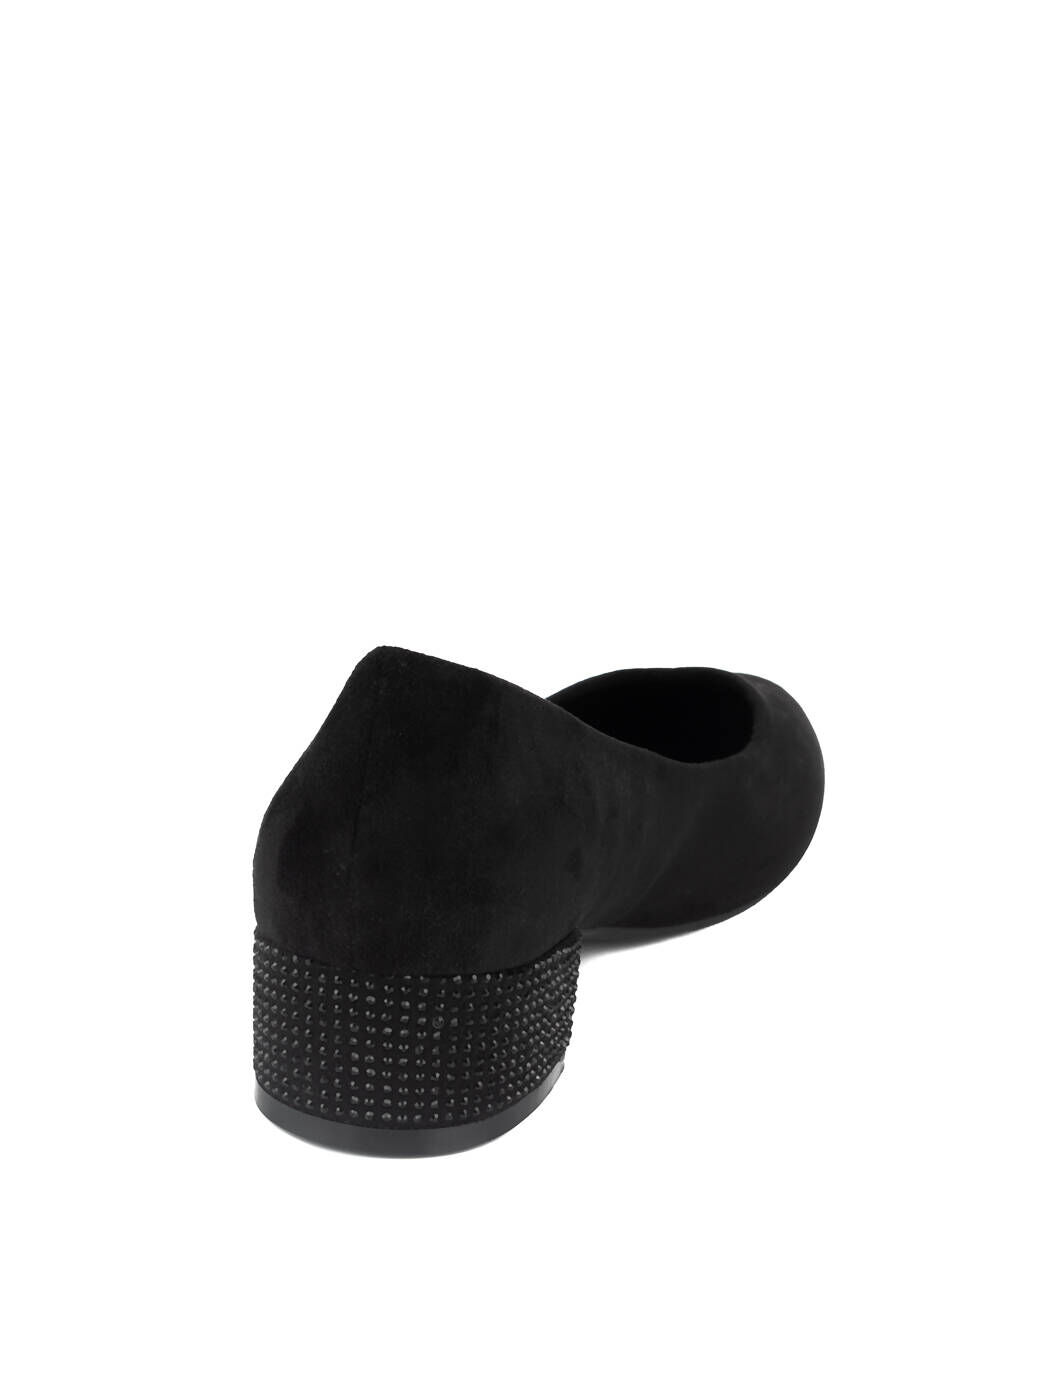 Туфли женские чёрные экозамша каблук устойчивый демисезон 11M вид 1